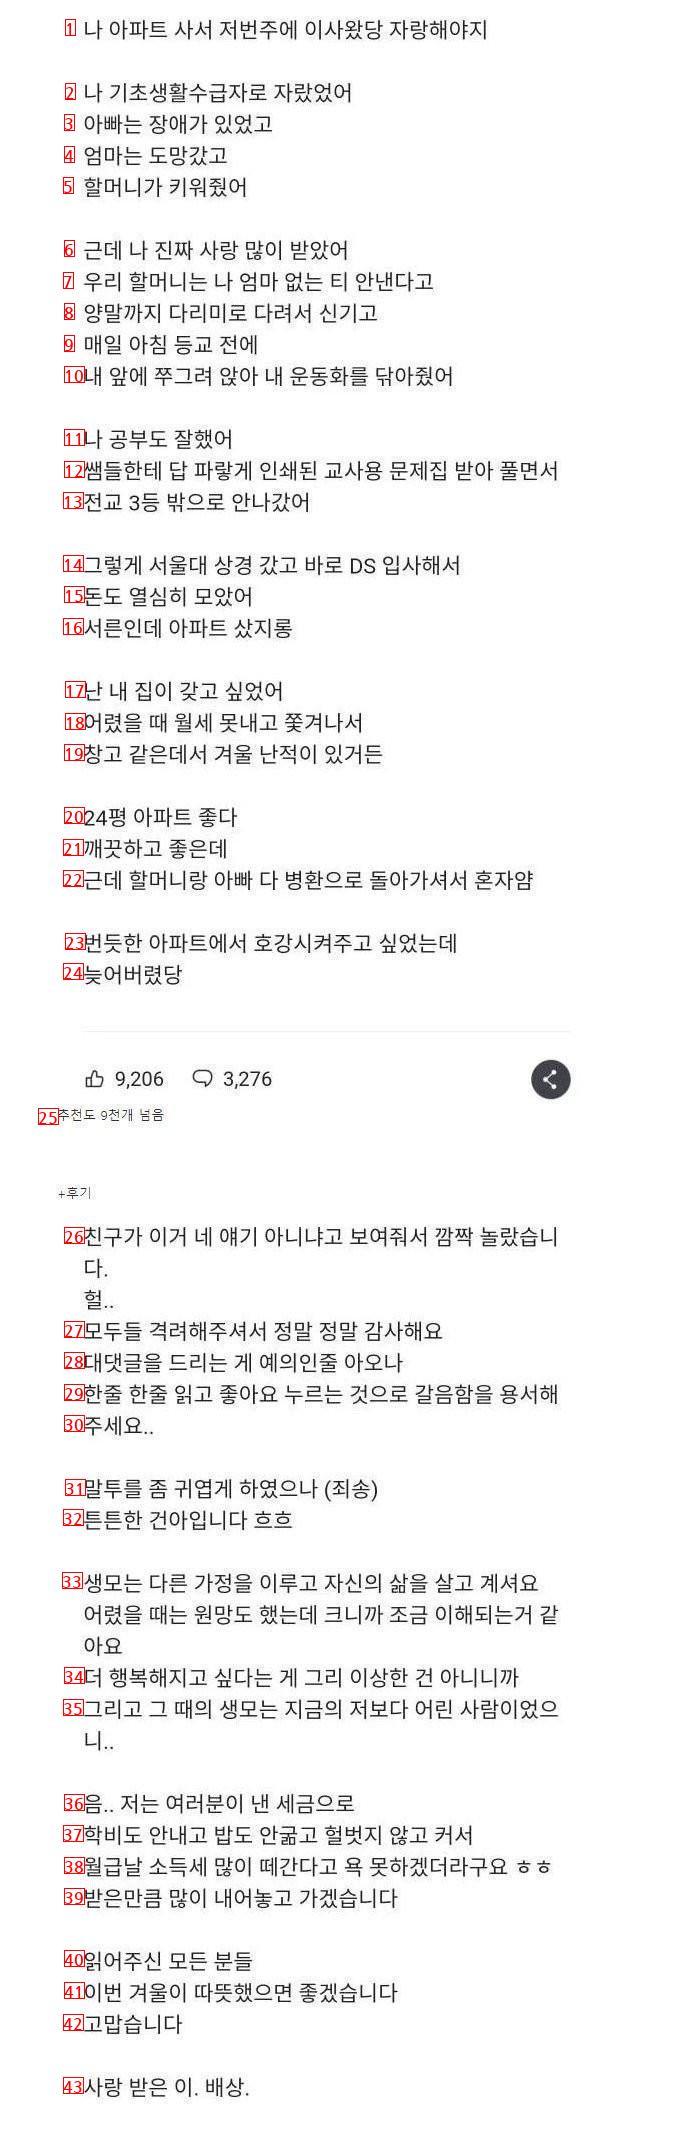 댓글만 3천개 달렸던 레전드 자랑글 + 후기